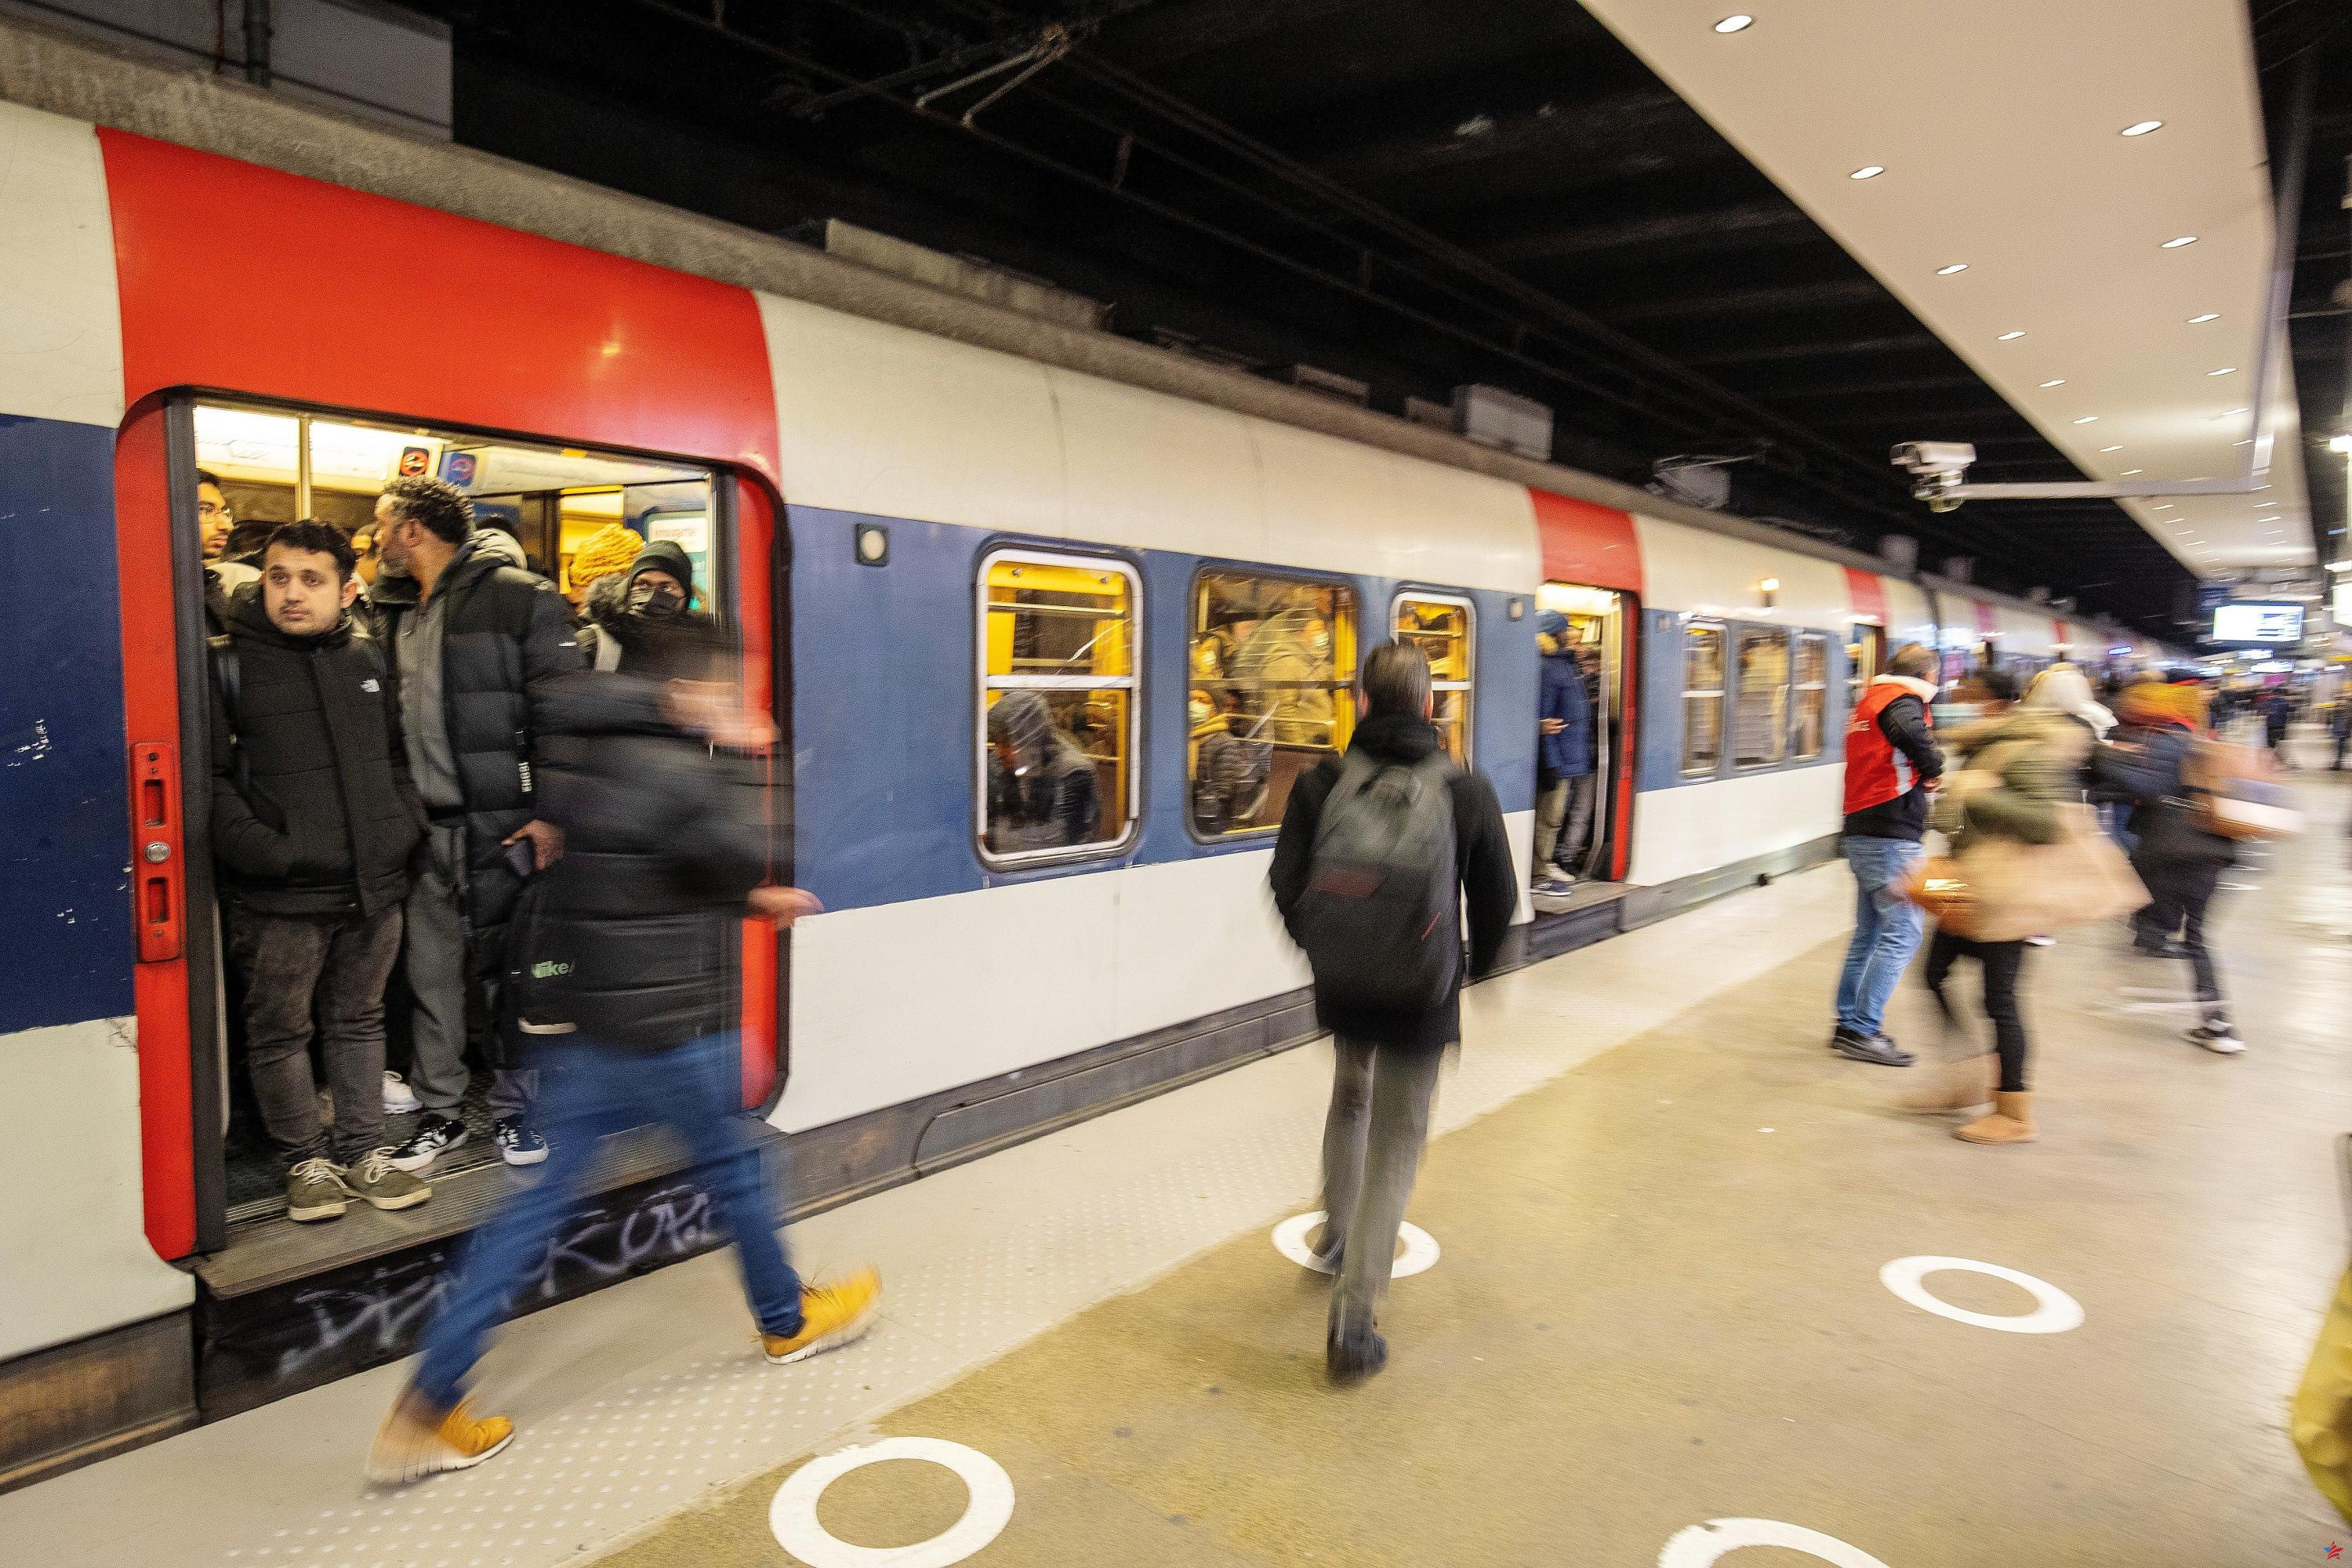 Huelga en el RER B: perturbaciones anunciadas “todo el día”